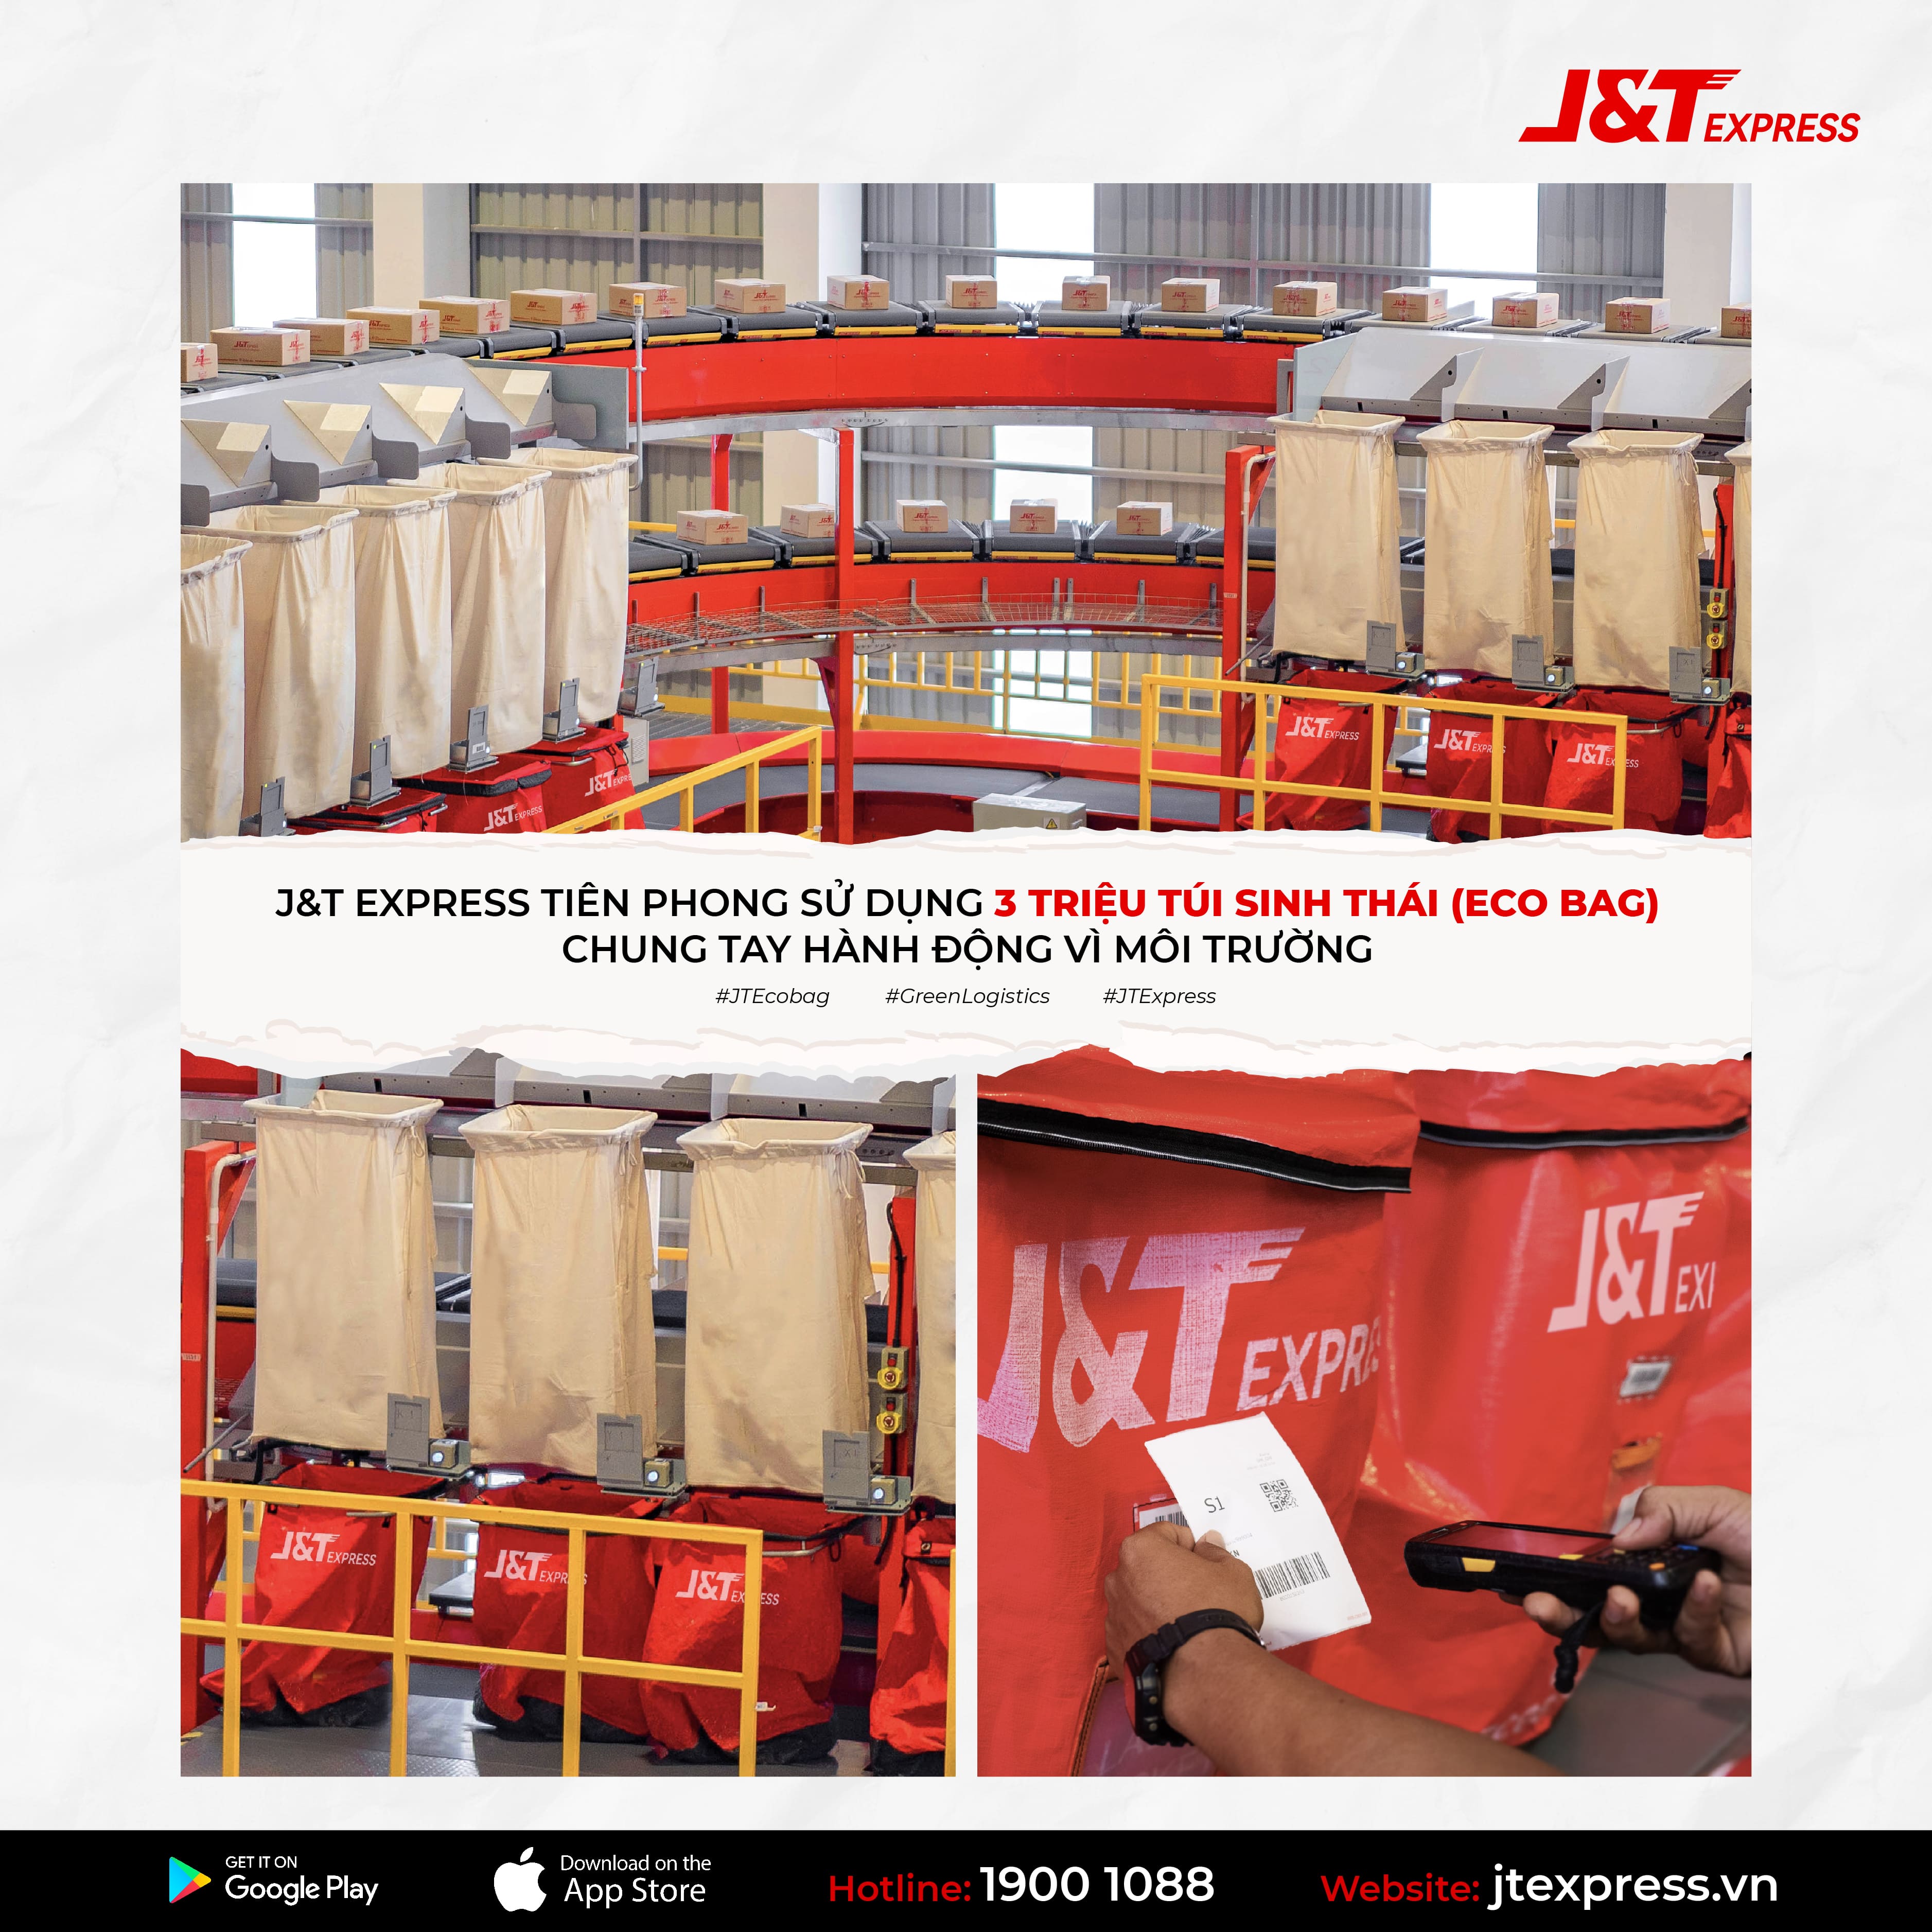 J&T Express - Giao hàng Chuyển phát nhanh